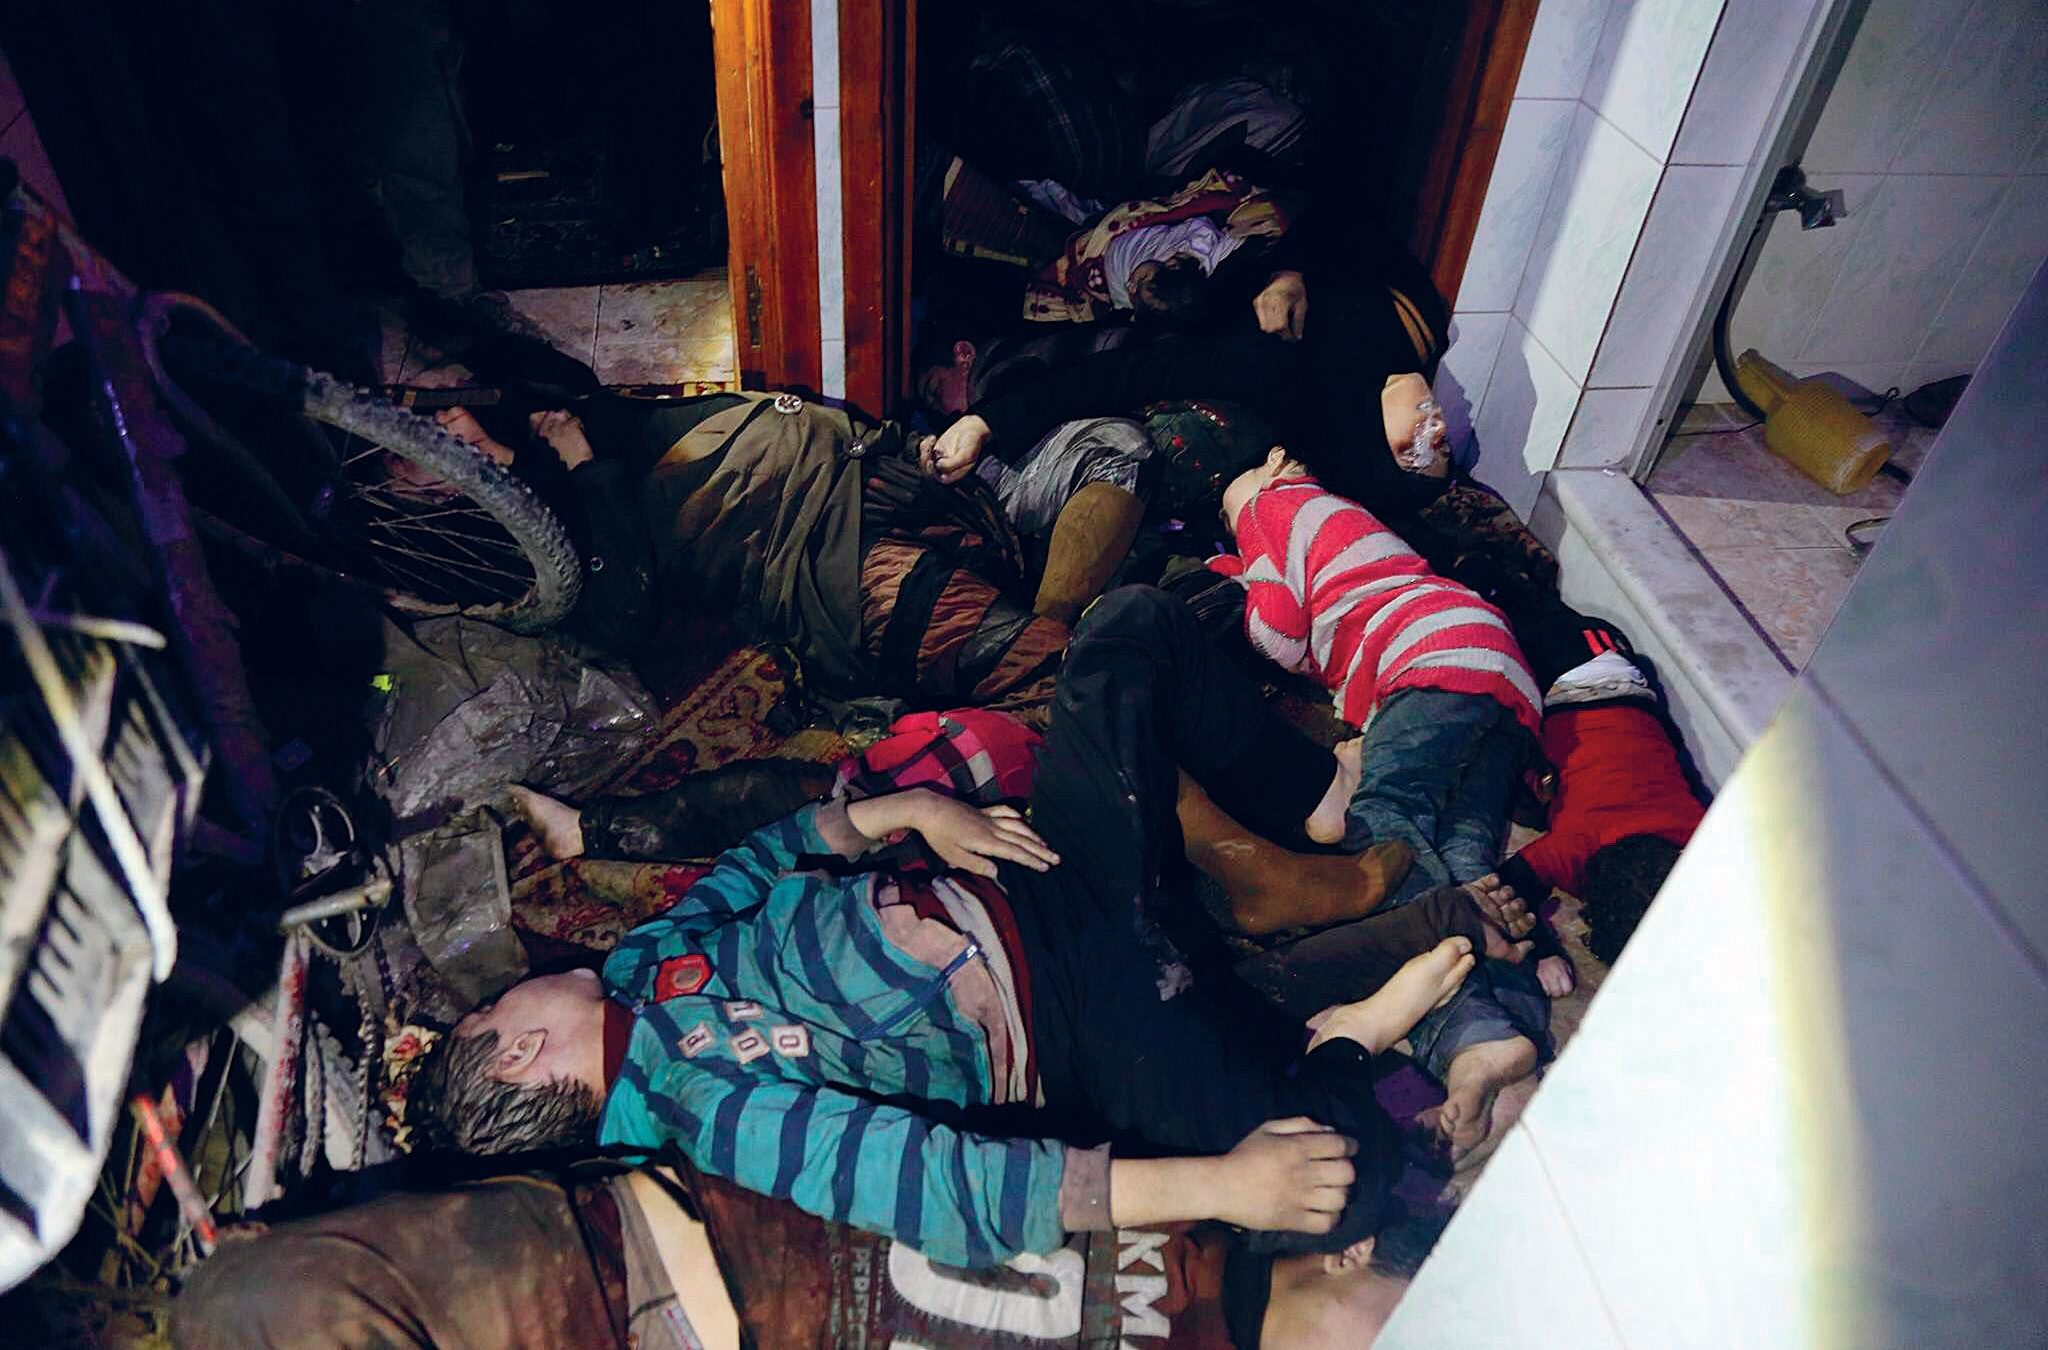 Syyrian siviilipuolustus -järjestö julkaisi huhtikuussa kuvia kaasuhyökkäyksen uhreista. Venäjän mukaan isku oli lavastettu.